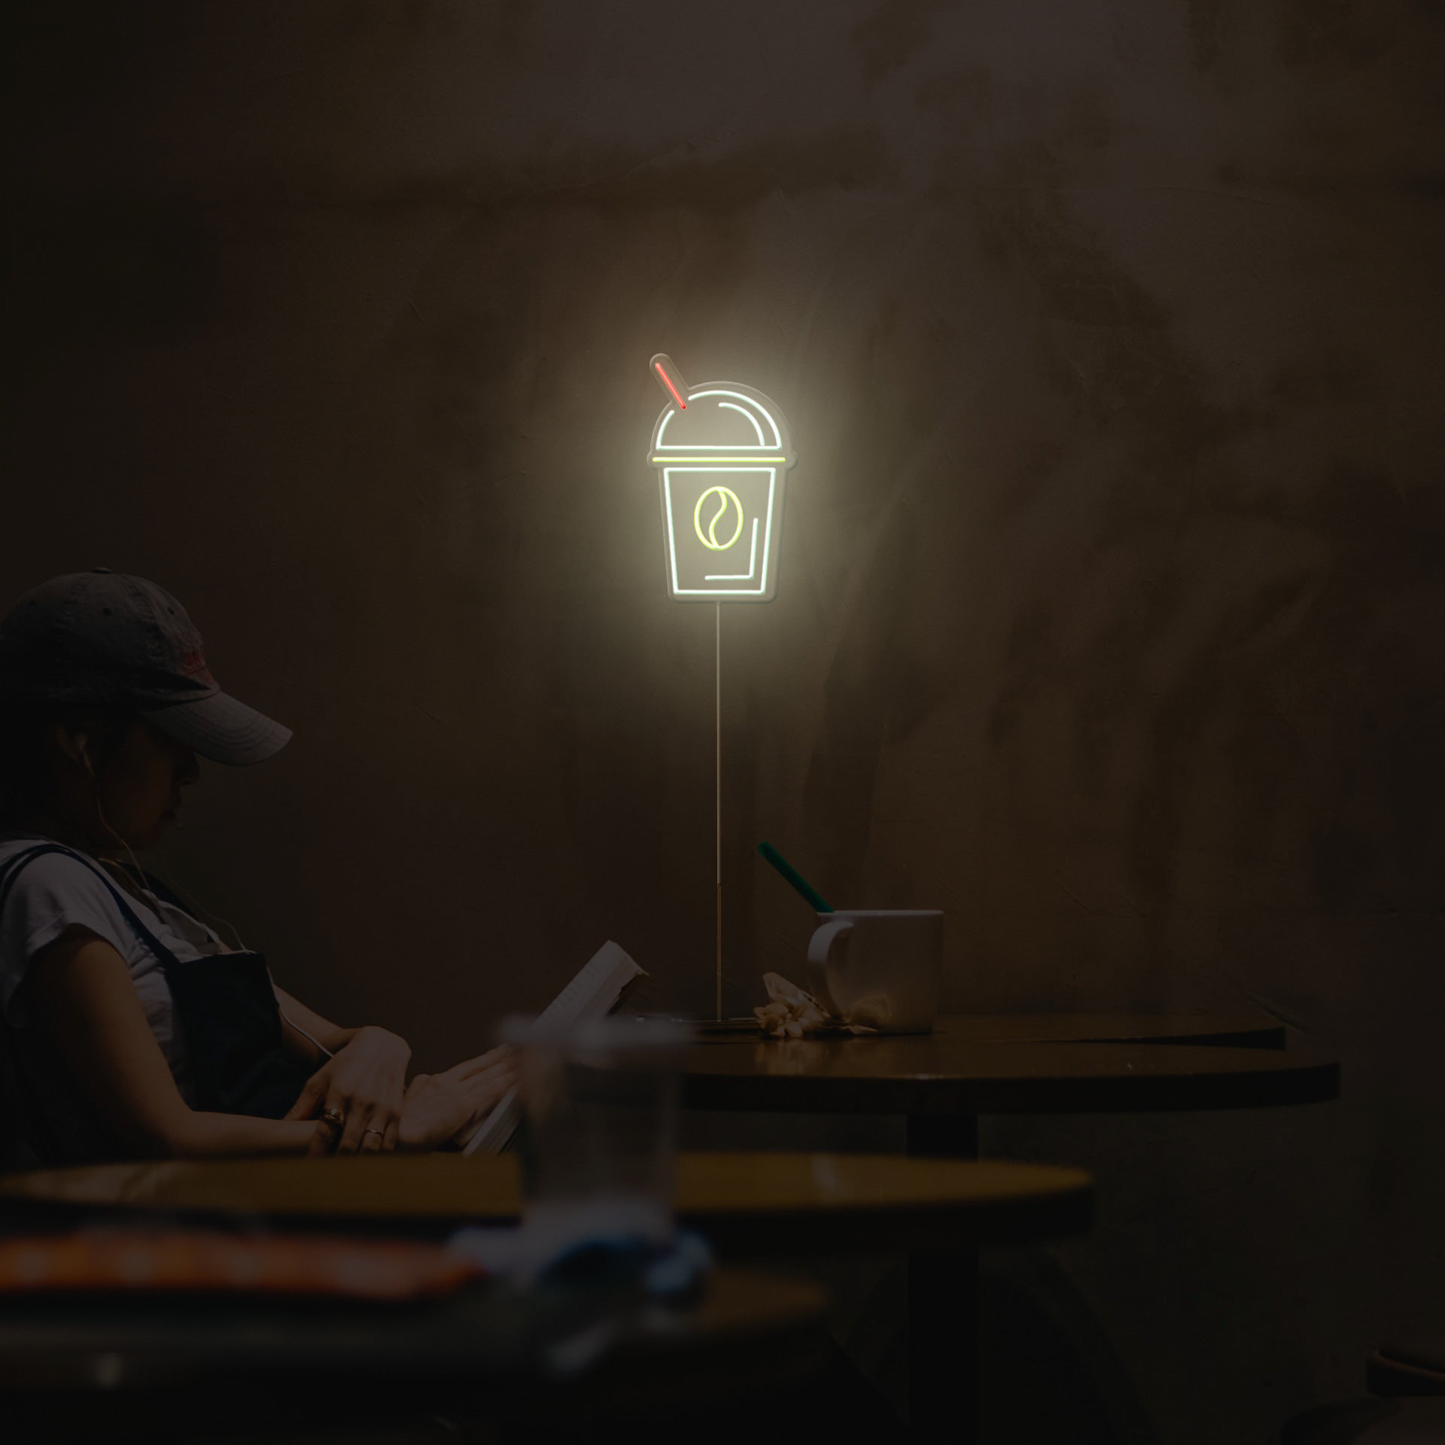 coffee-mug-neon-sign